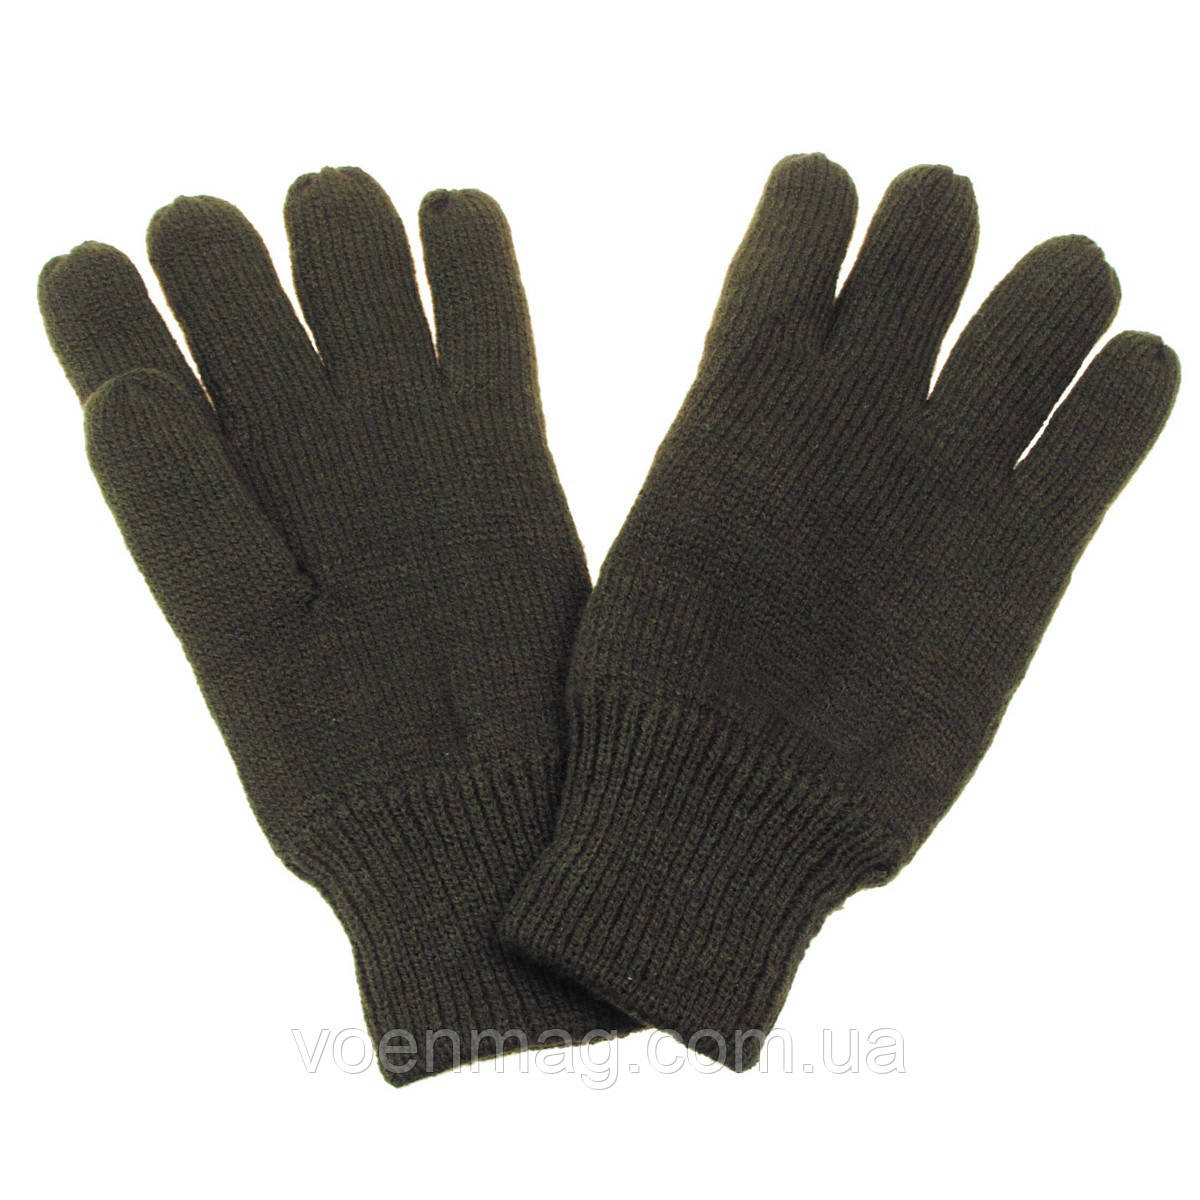 Зимние акриловые перчатки Thinsulate MFH, олива новые 745447837:  .